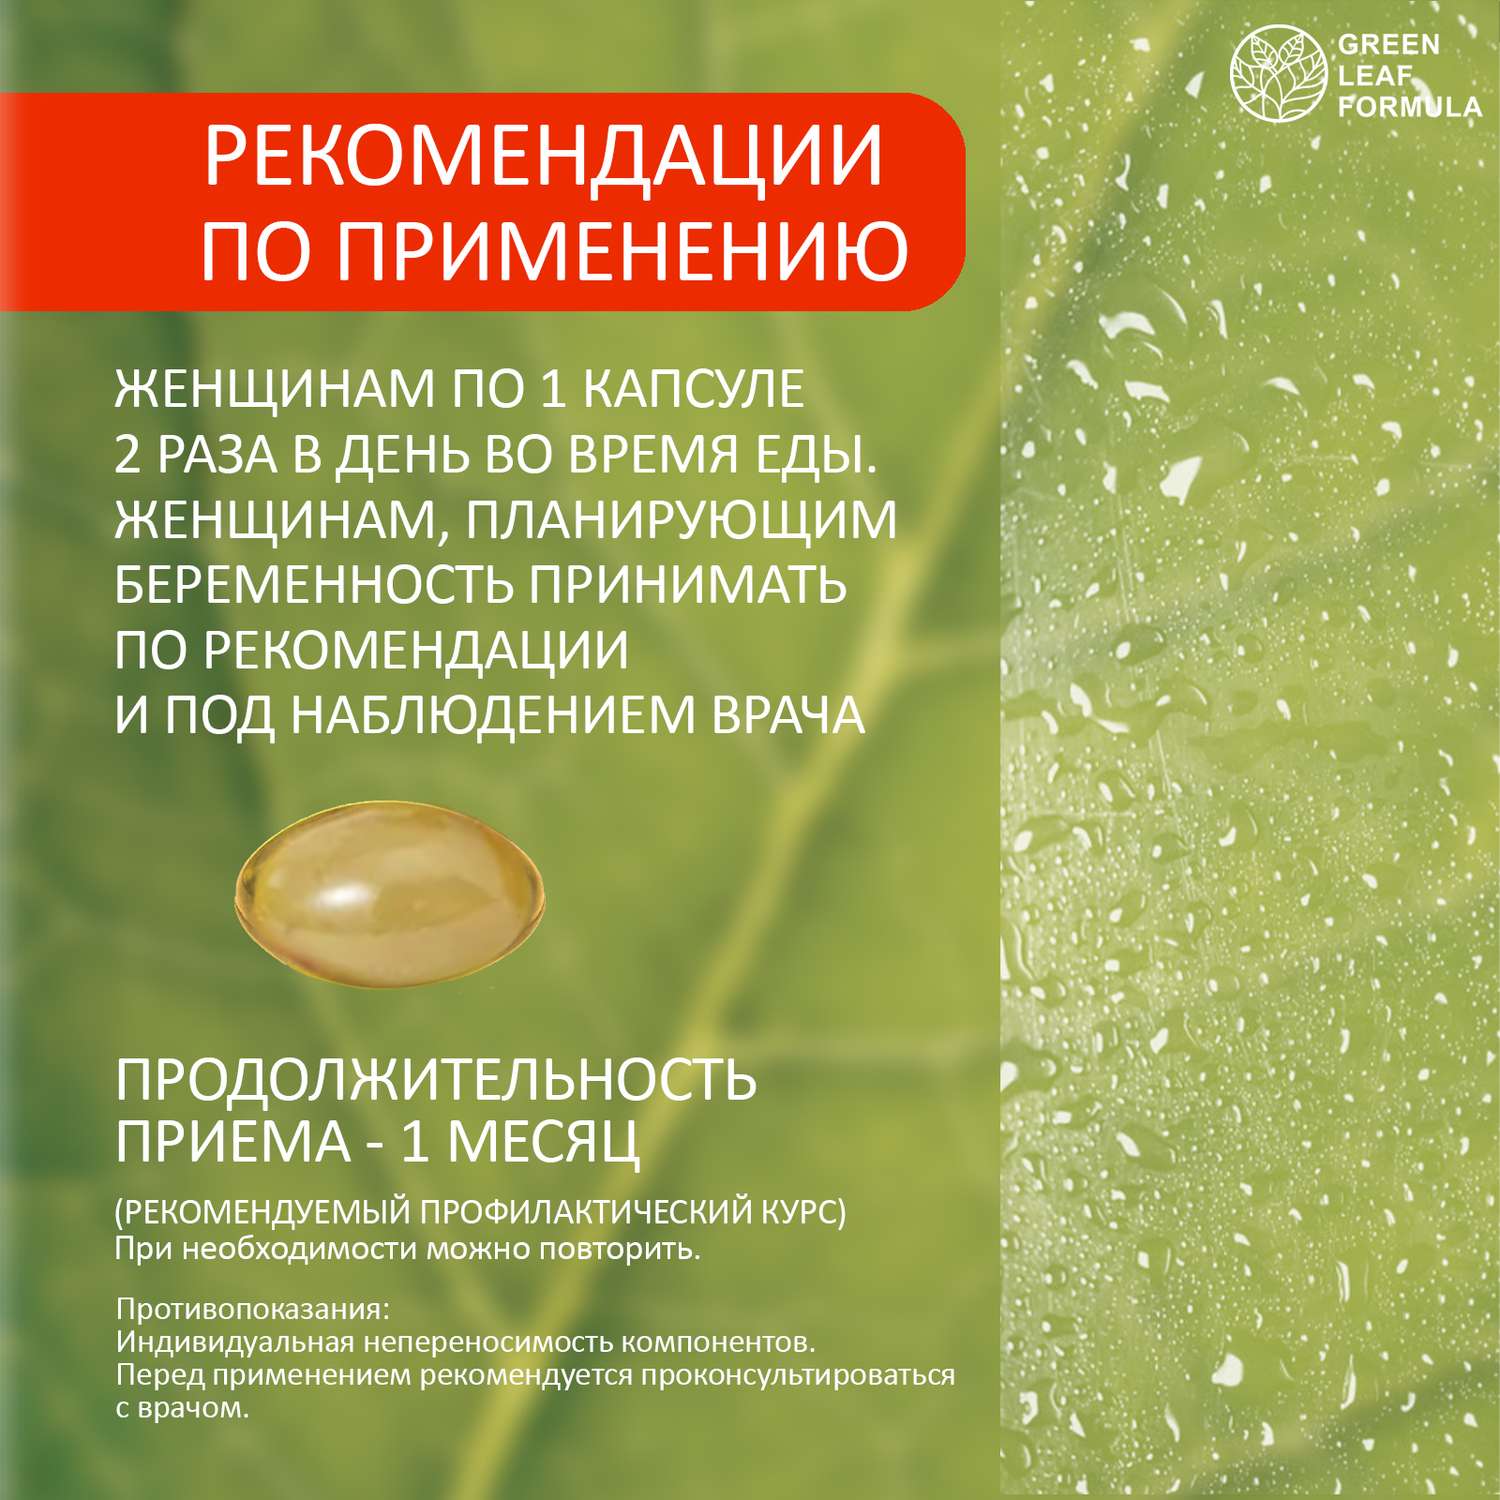 Пробиотики и фолиевая кислота Green Leaf Formula витамины для детей кальций Д3 витамины женские для беременных и кормящих 2 банки - фото 19